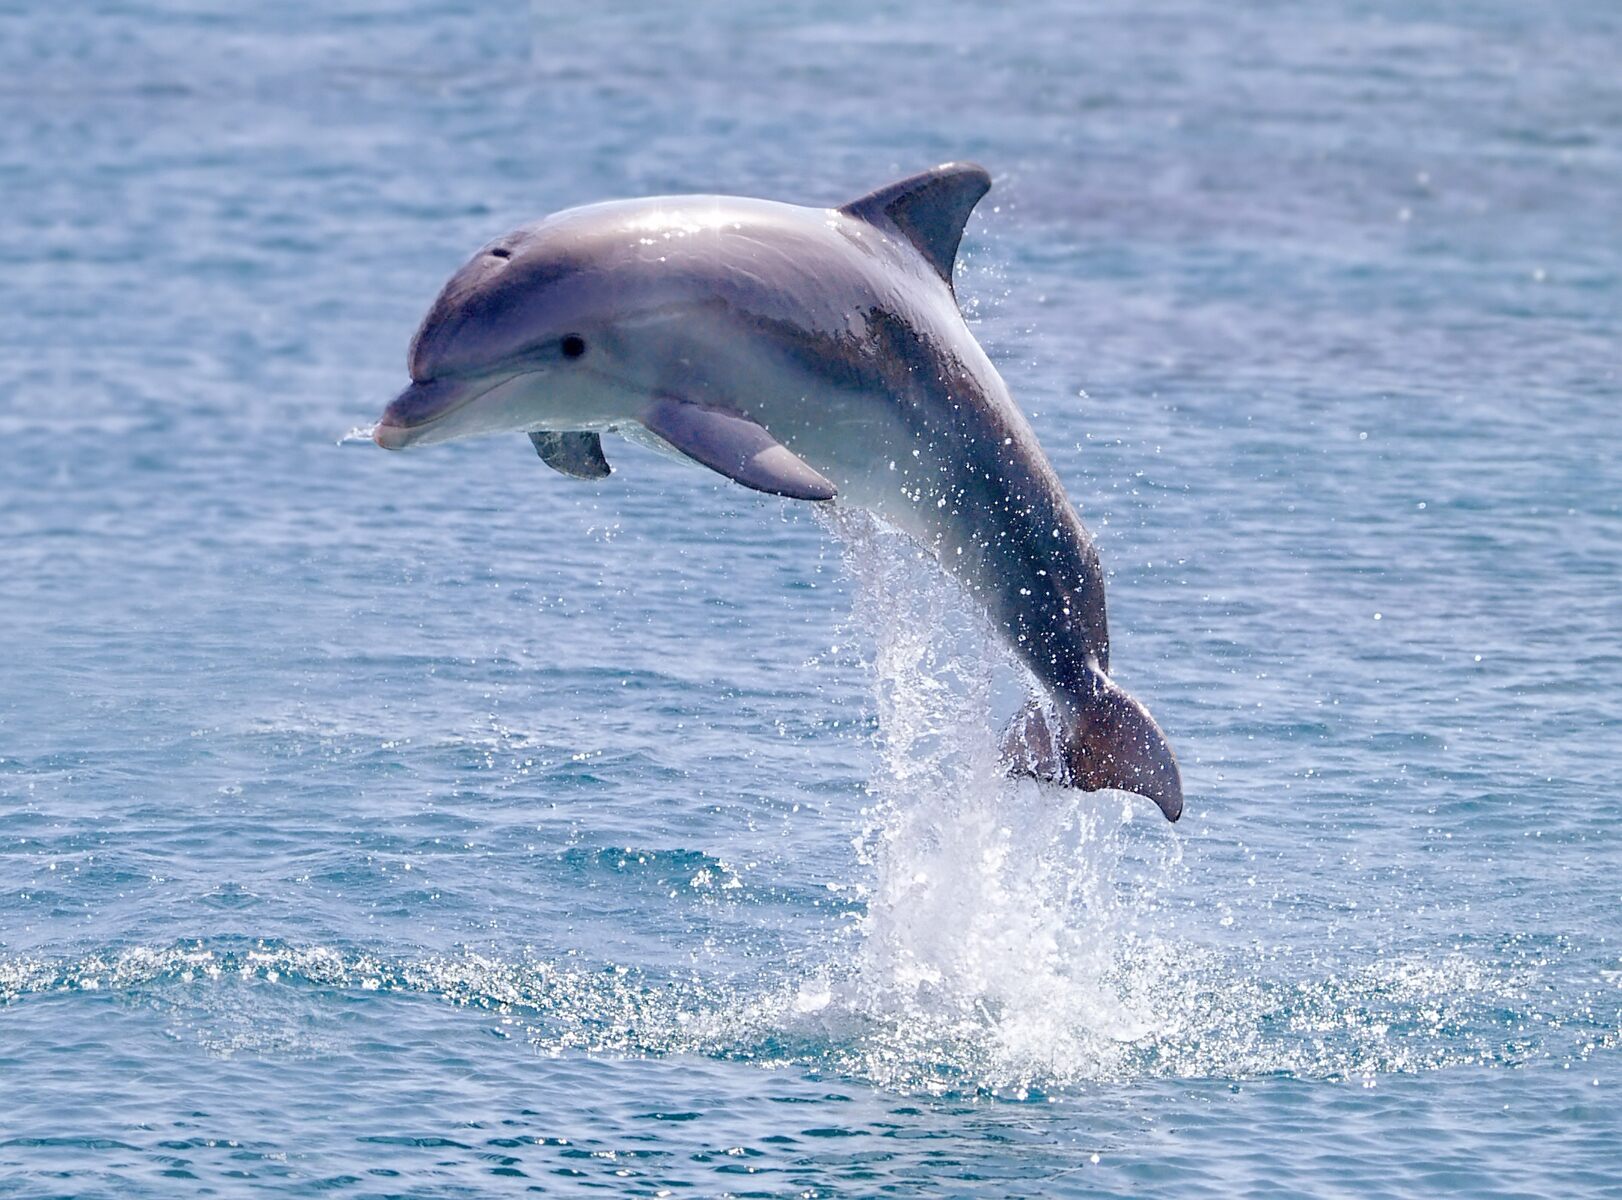 Cetacean sighting